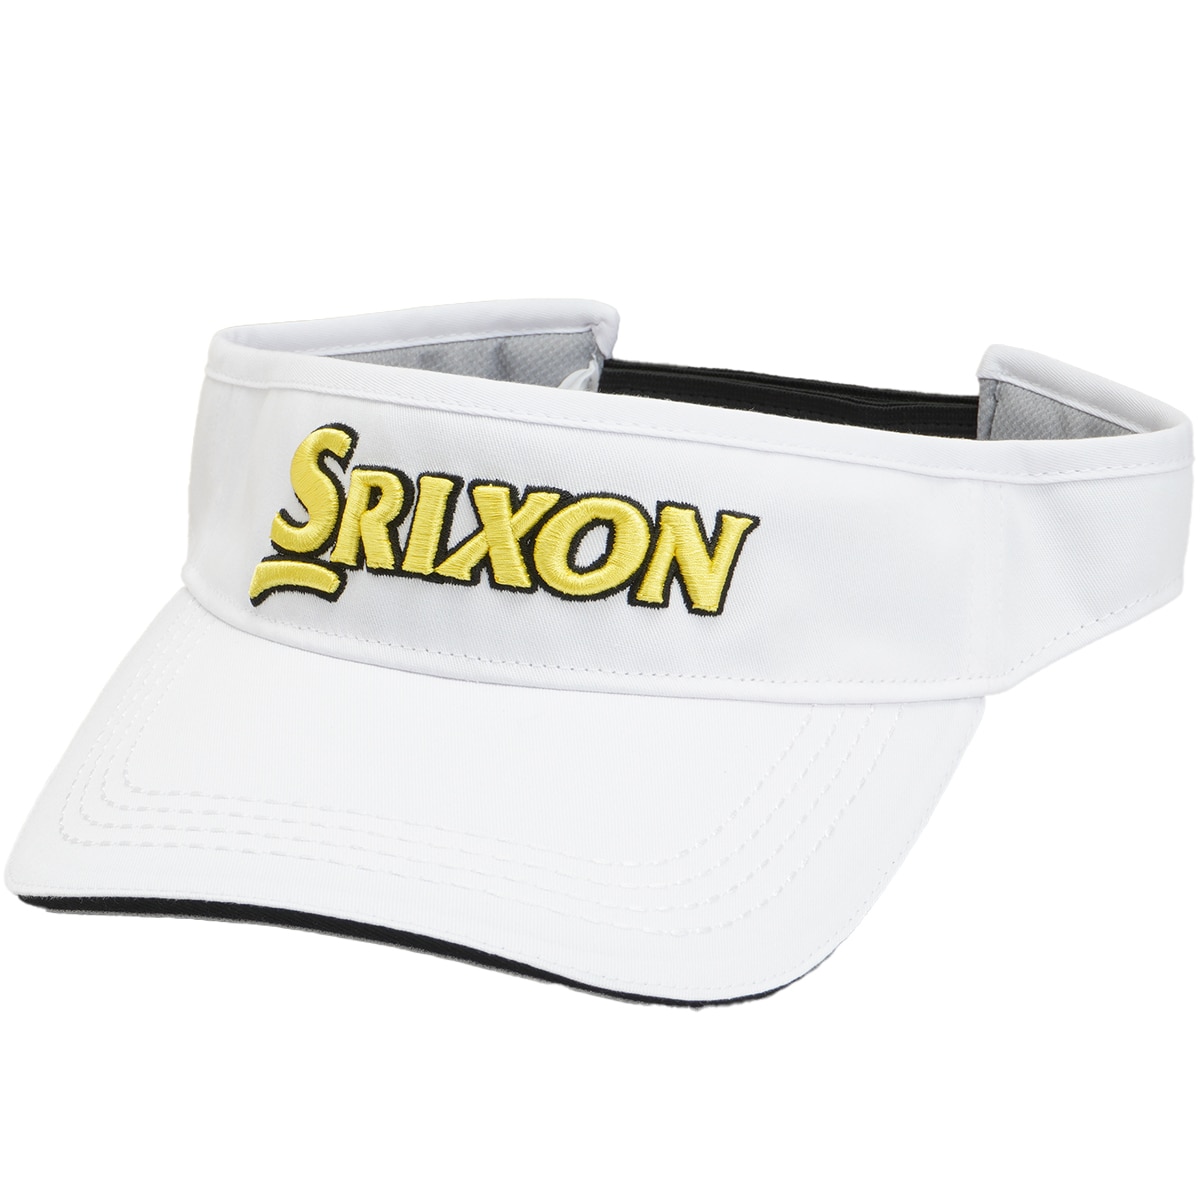 サンバイザー(【男性】バイザー)|SRIXON(ダンロップ) SMH3331Xの通販 